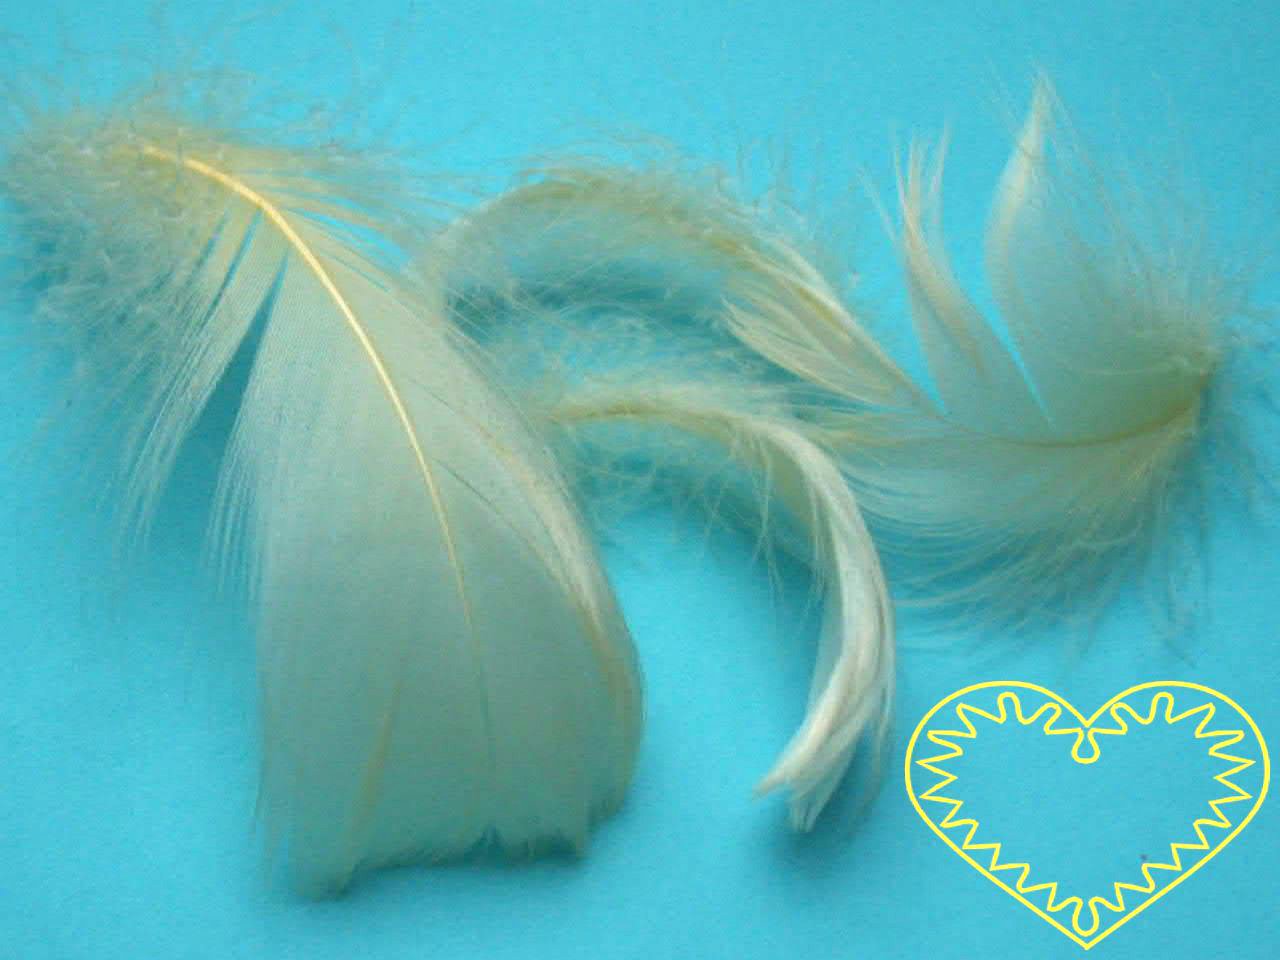 Peříčka bledě žlutá - balení 15 g (cca 250 kusů). Peříčka mají široké uplatnění jak při aranžování a výrobě dekorací, tak také např. při tvoření figurek ptáčků, andělíčků apod.